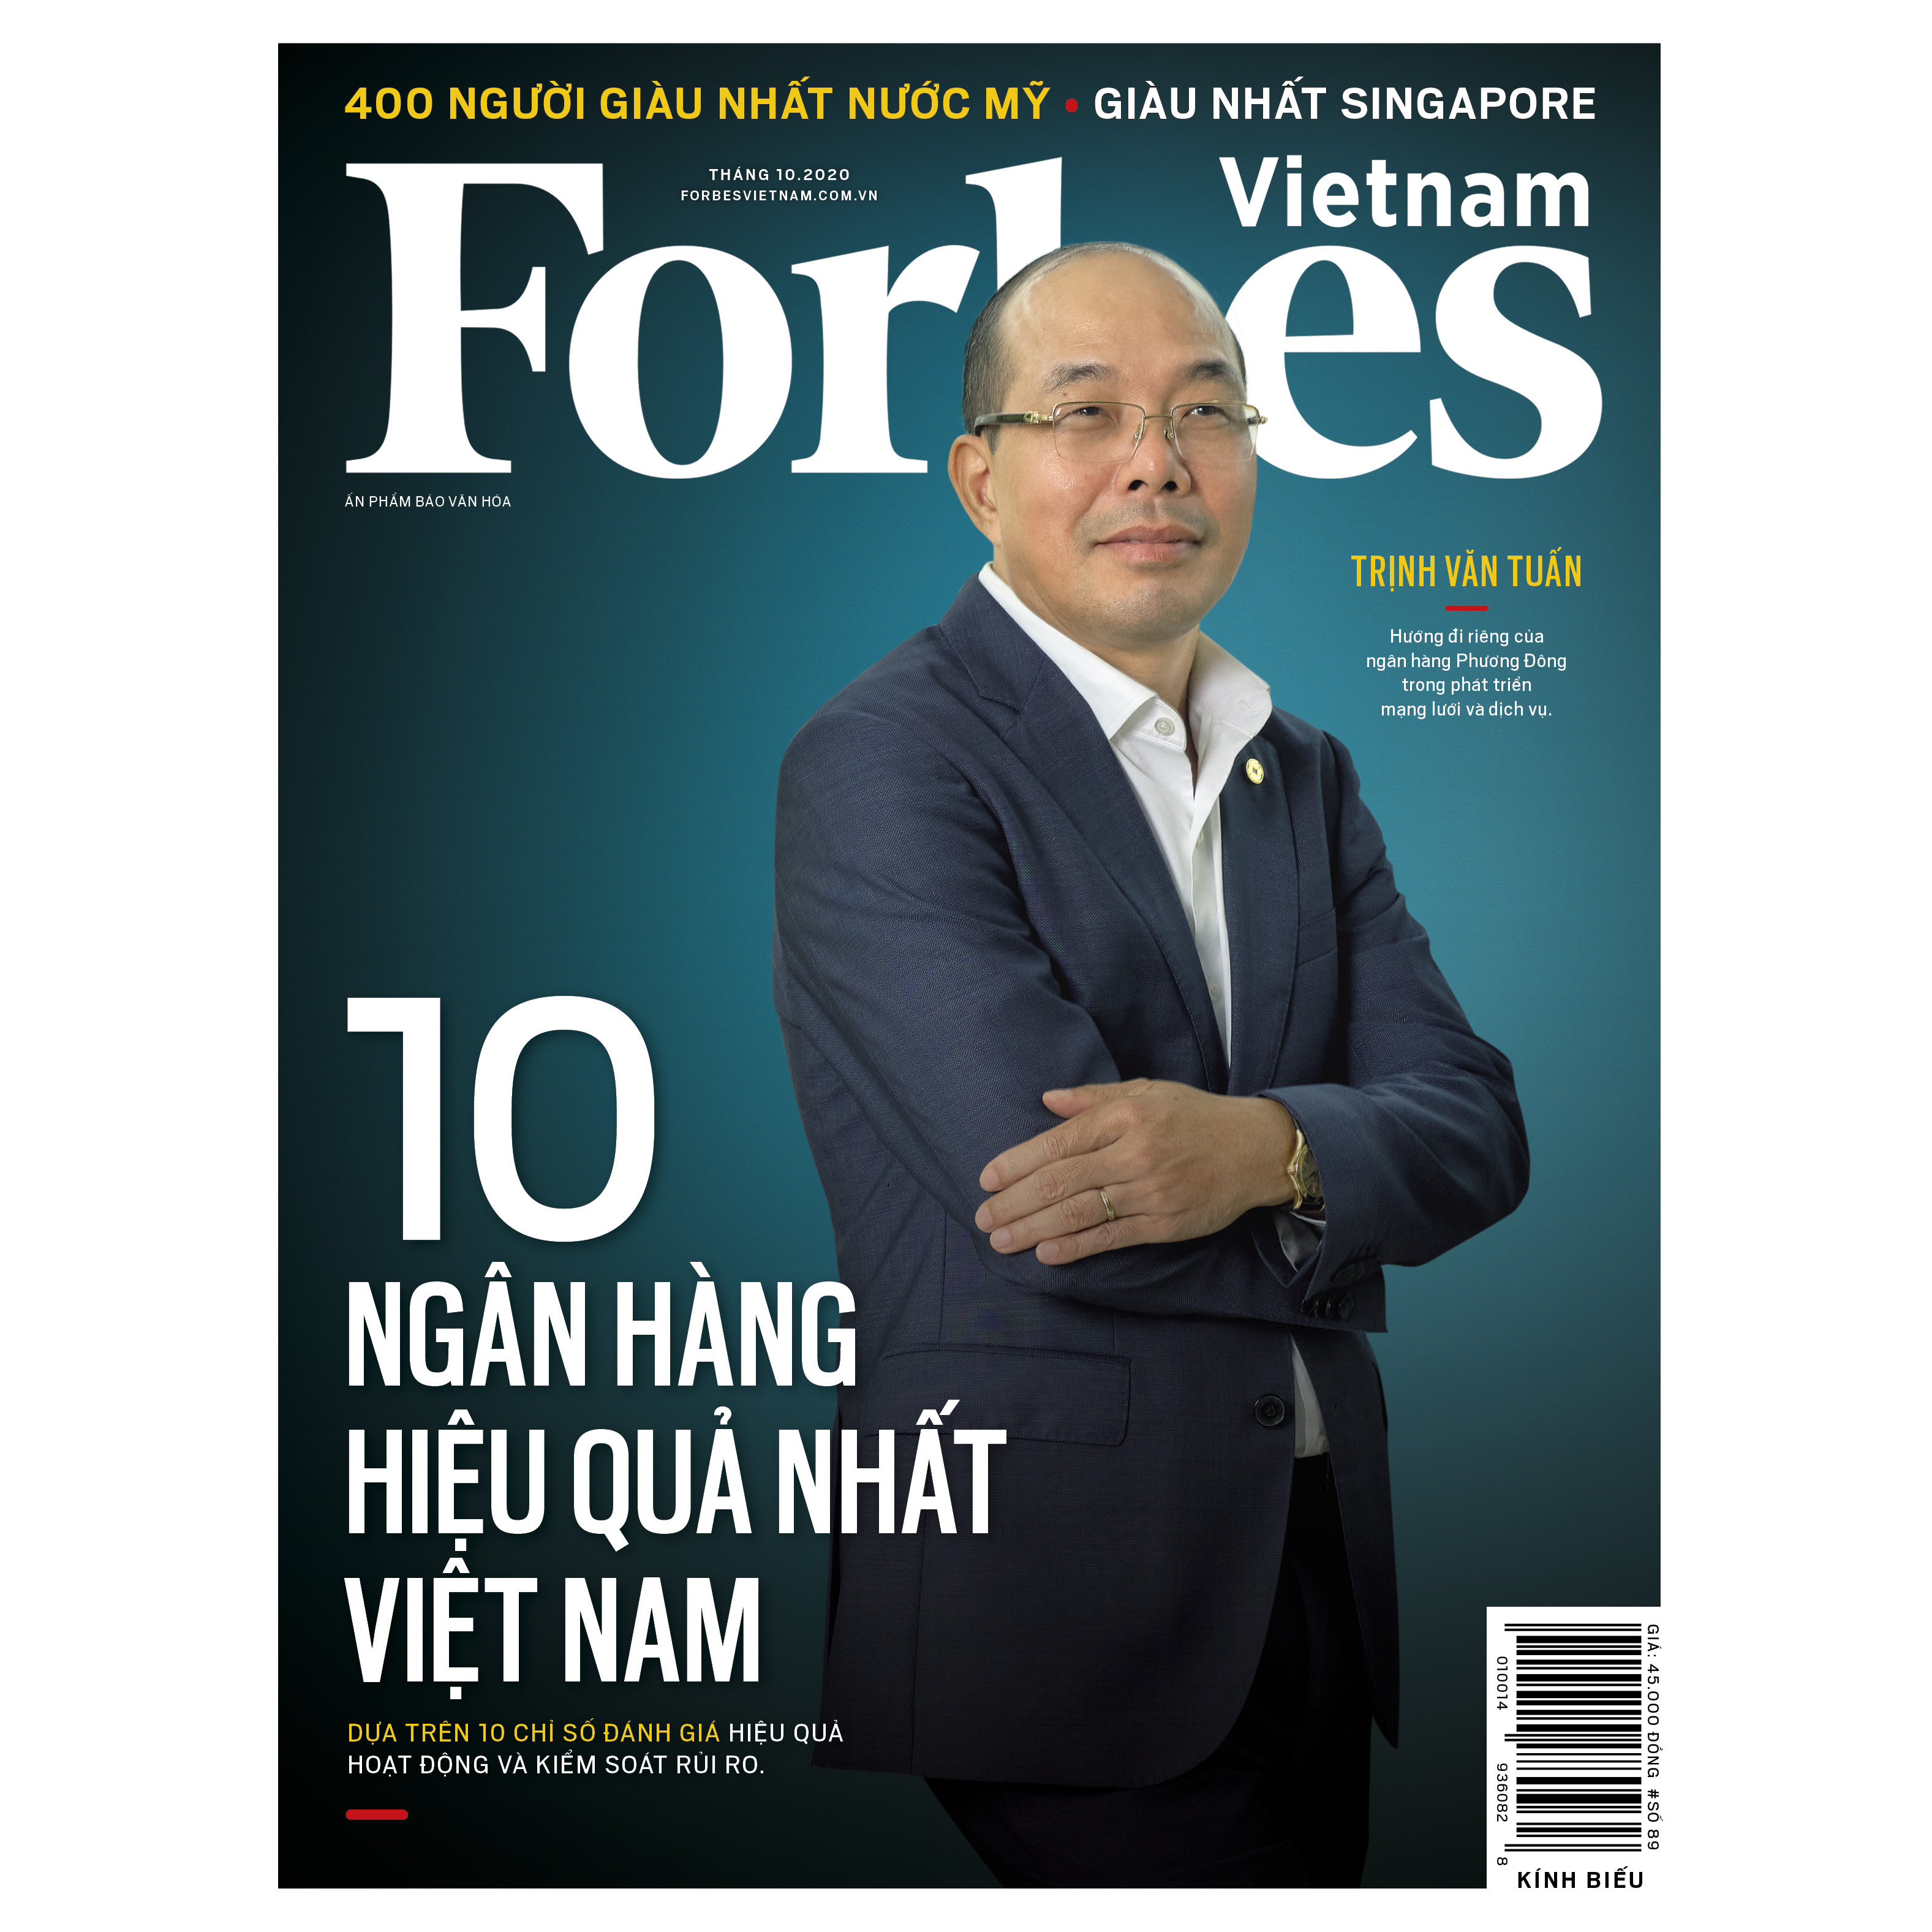 Forbes Việt Nam số 89 - 10 ngân hàng hiệu quả nhất Việt Nam